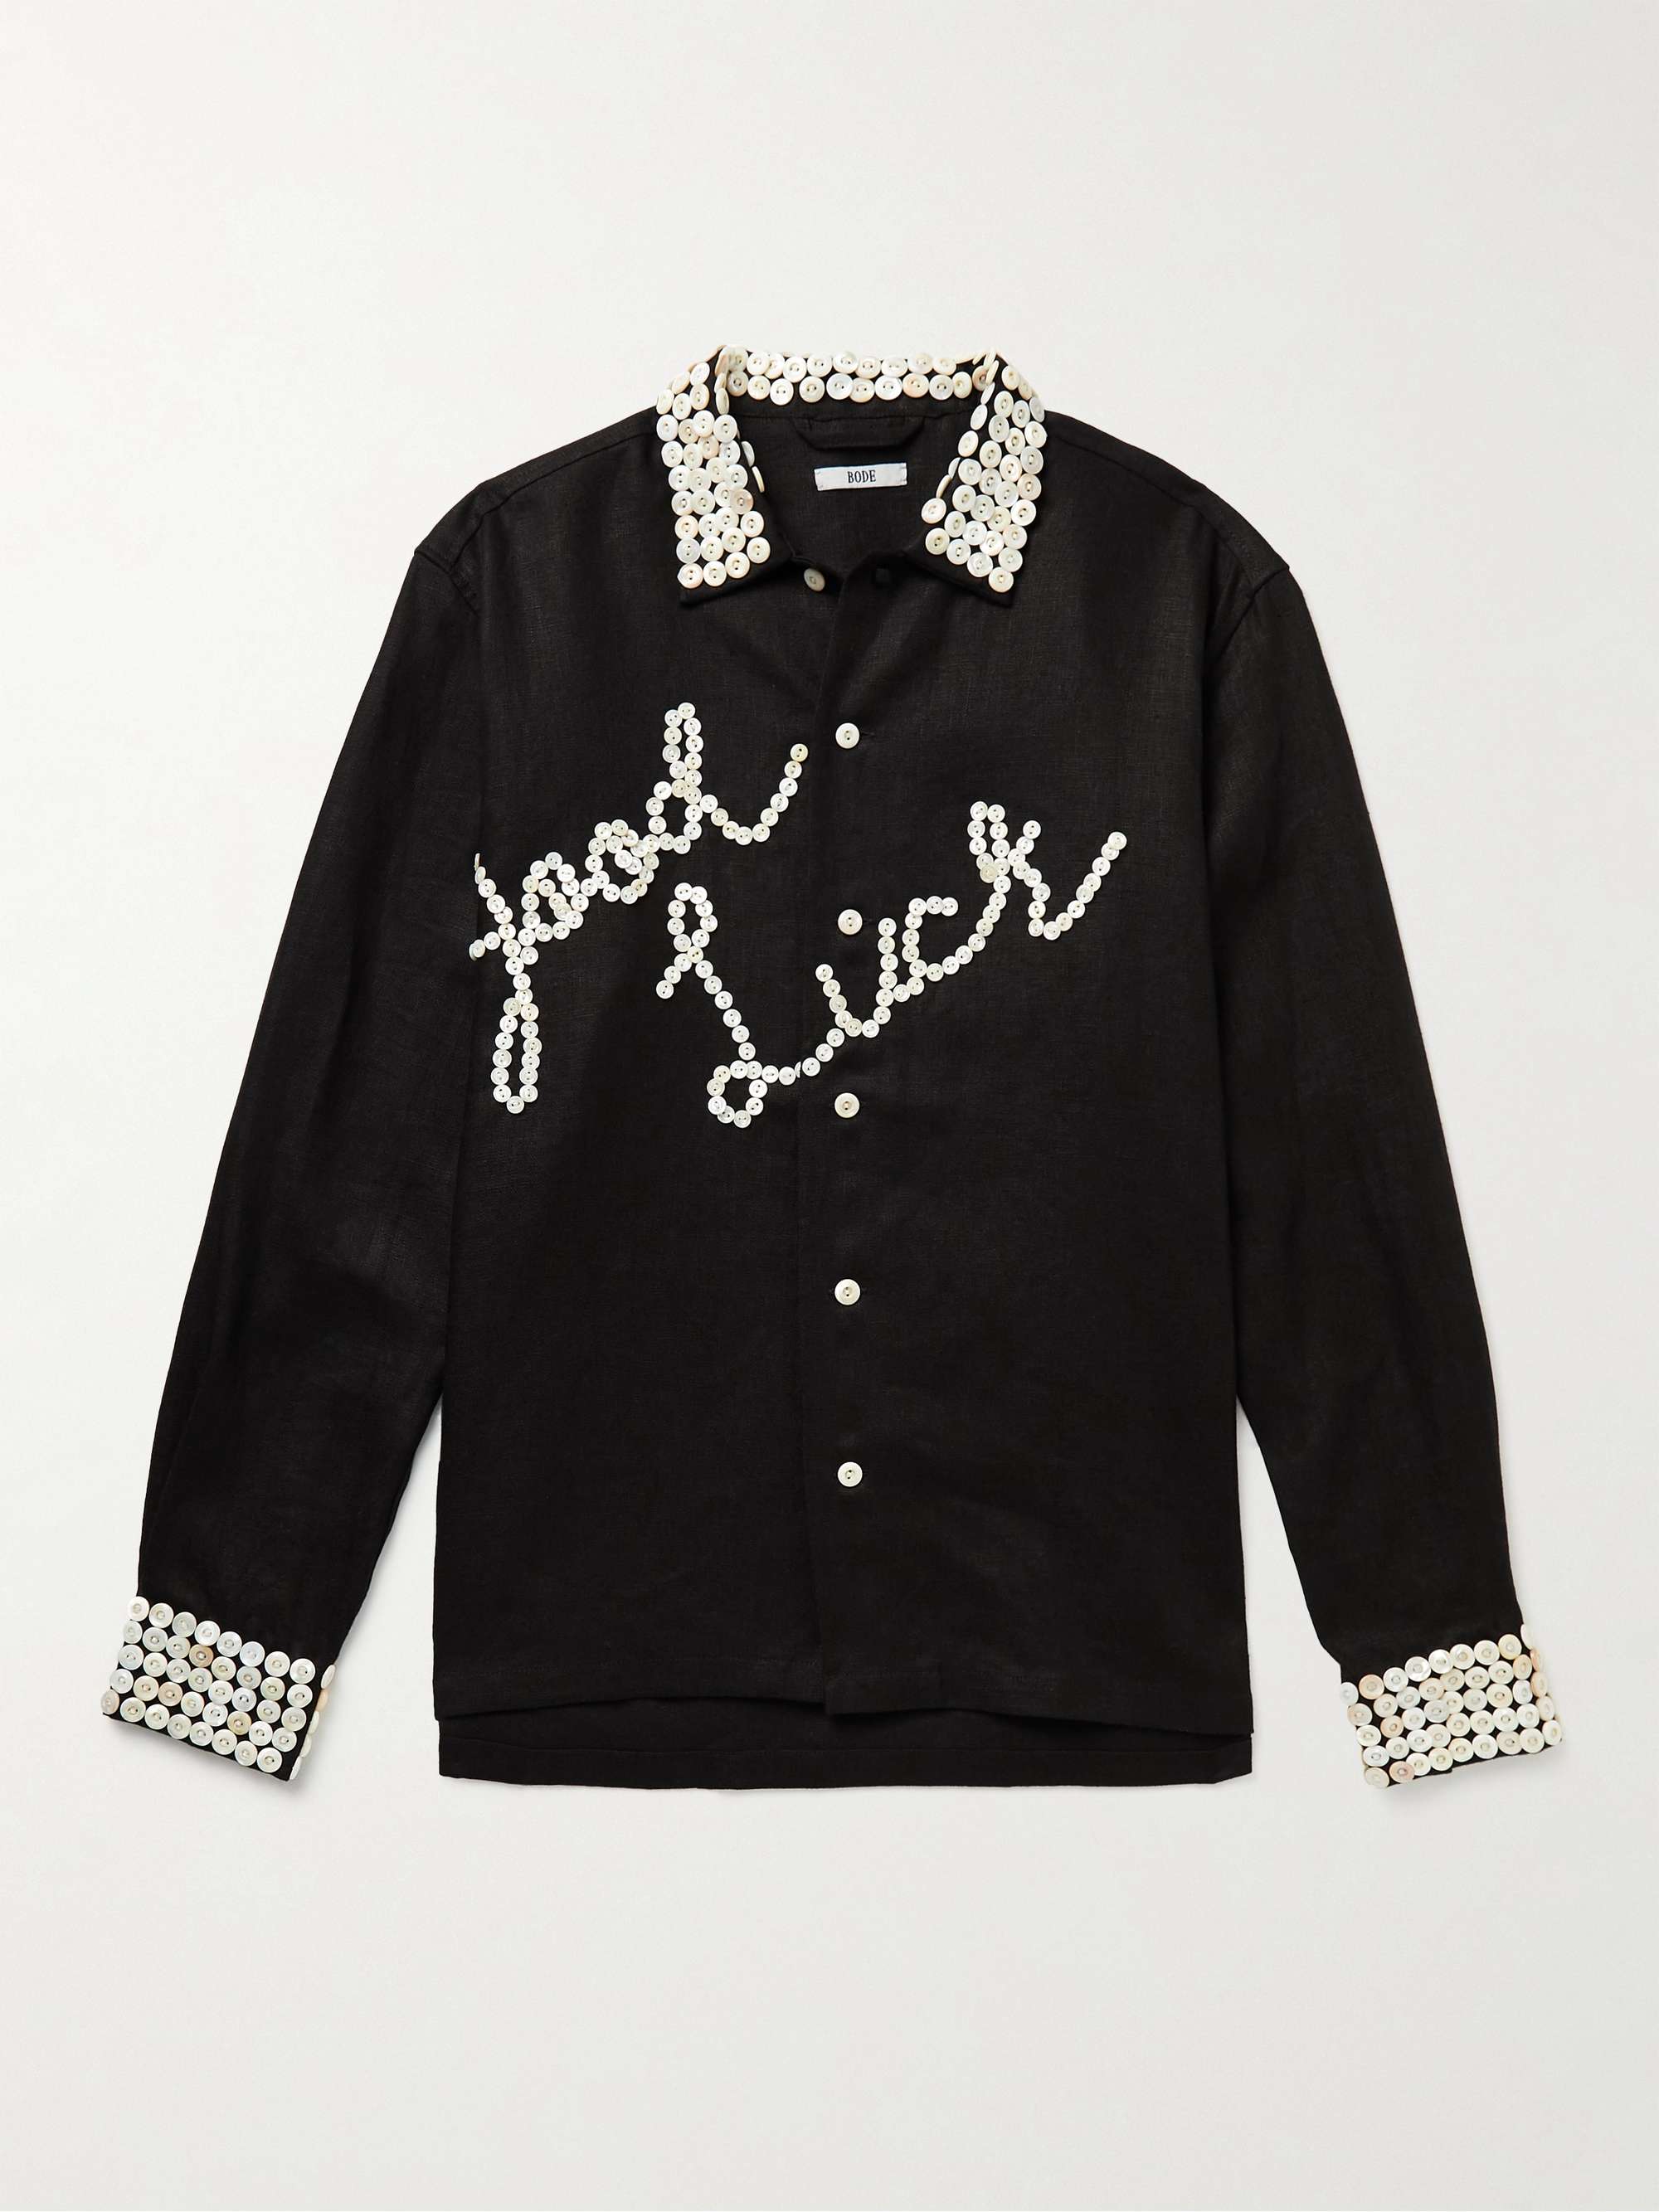 BODE Good Luck Button-Embellished Linen Shirt